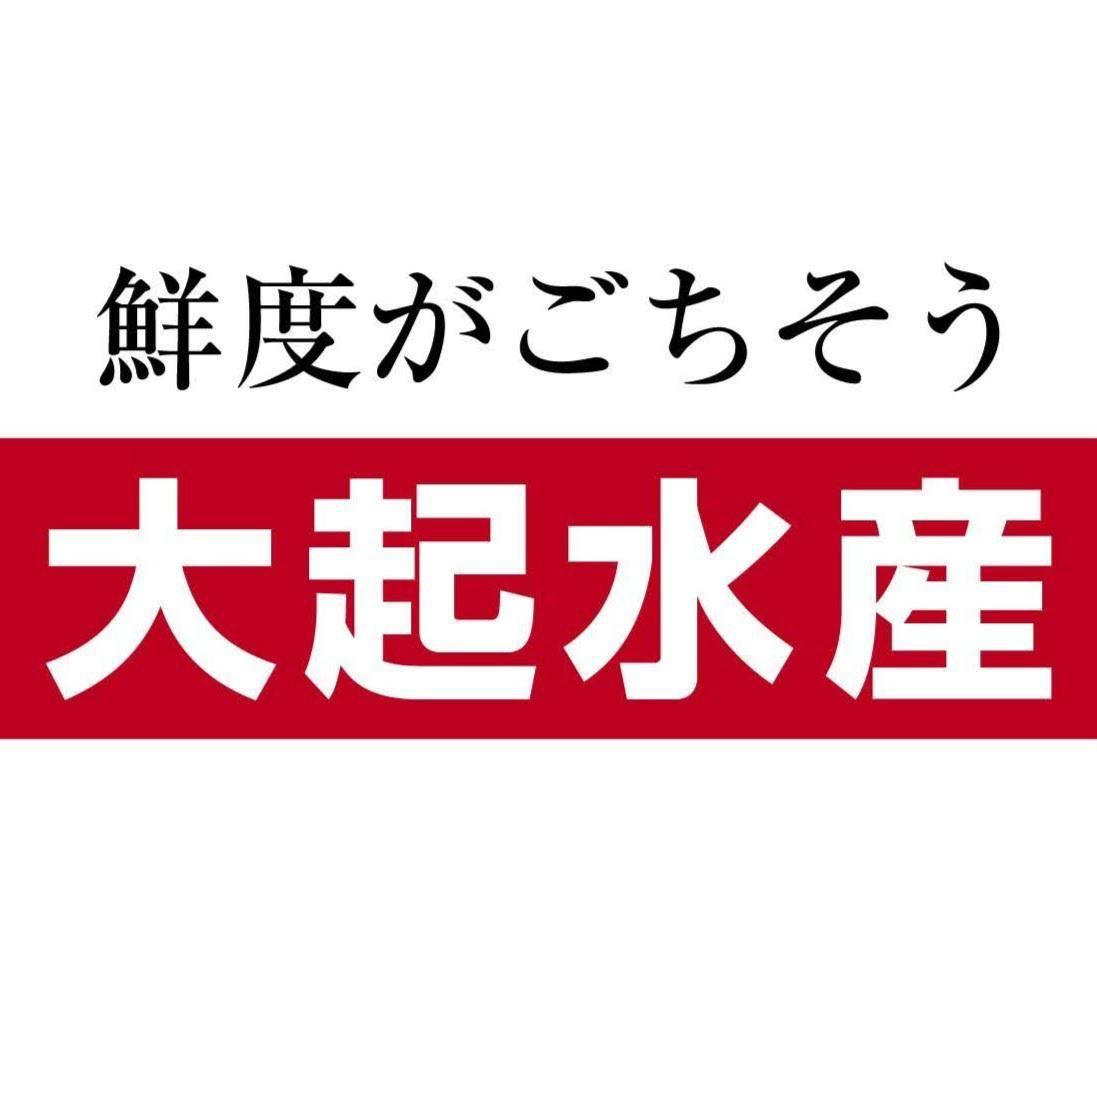 大起水産回転寿司 エル枚方店 Logo